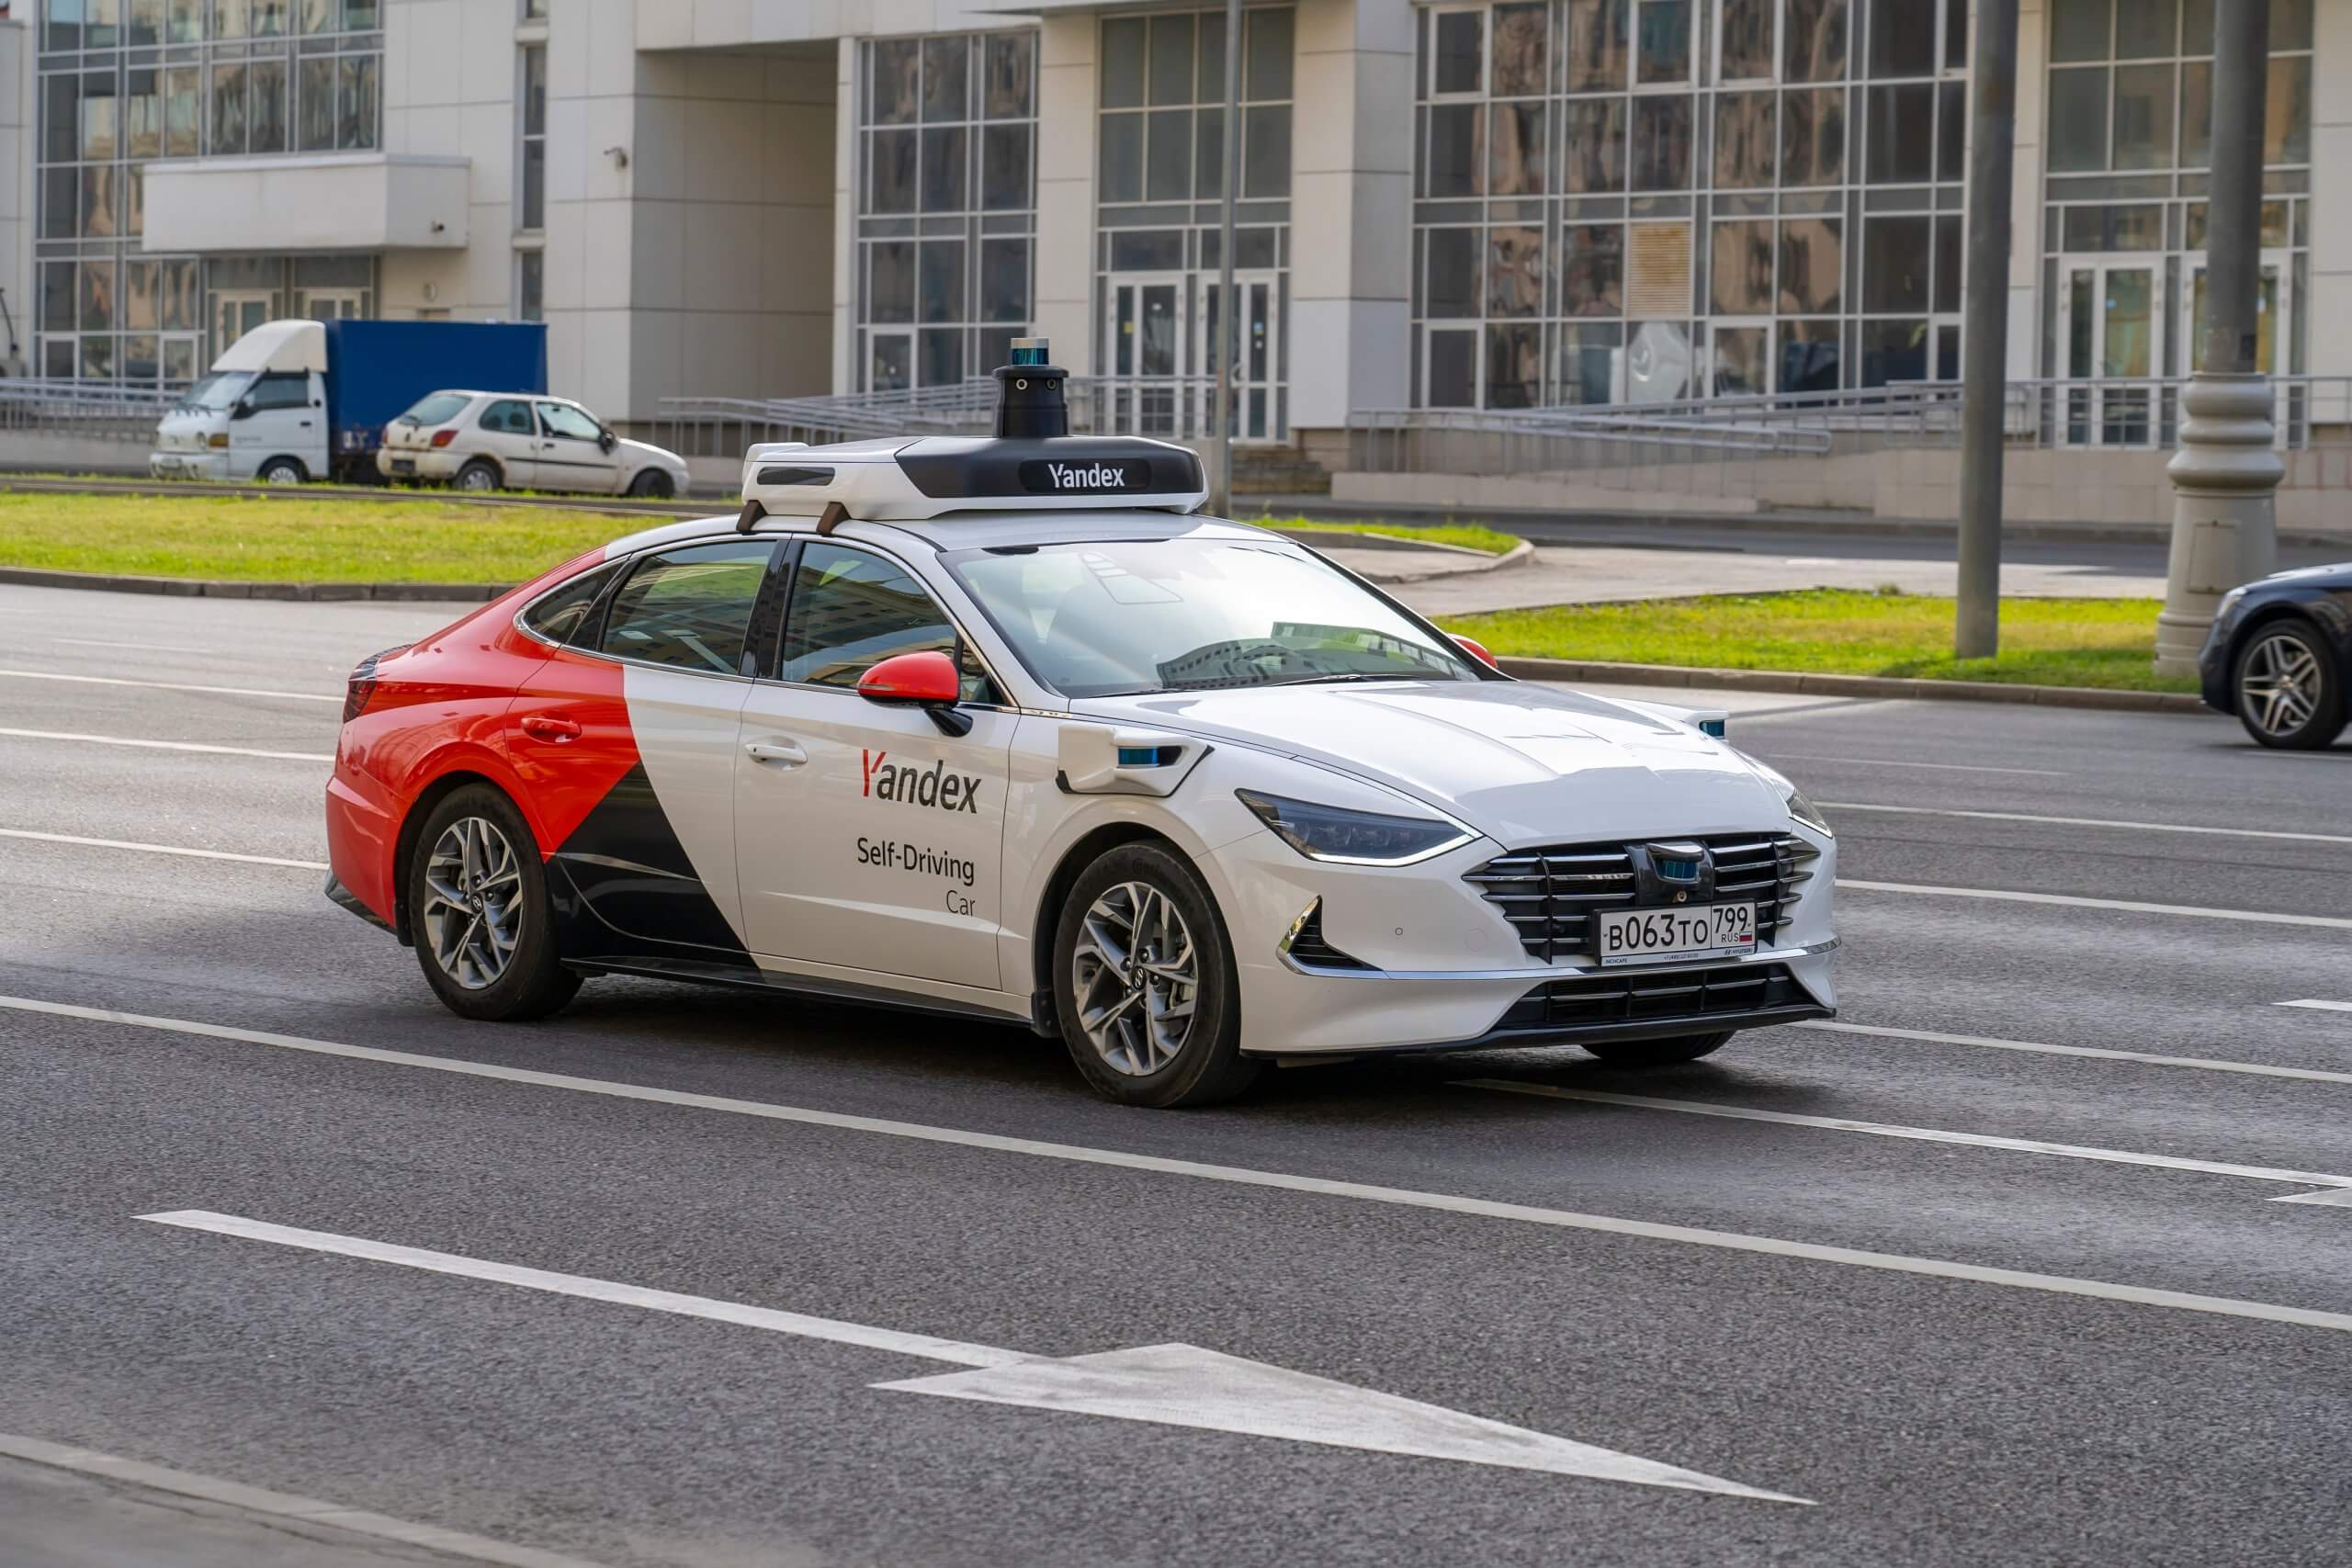 Yandex robotaxi Moscow Russia autonomous vehicle